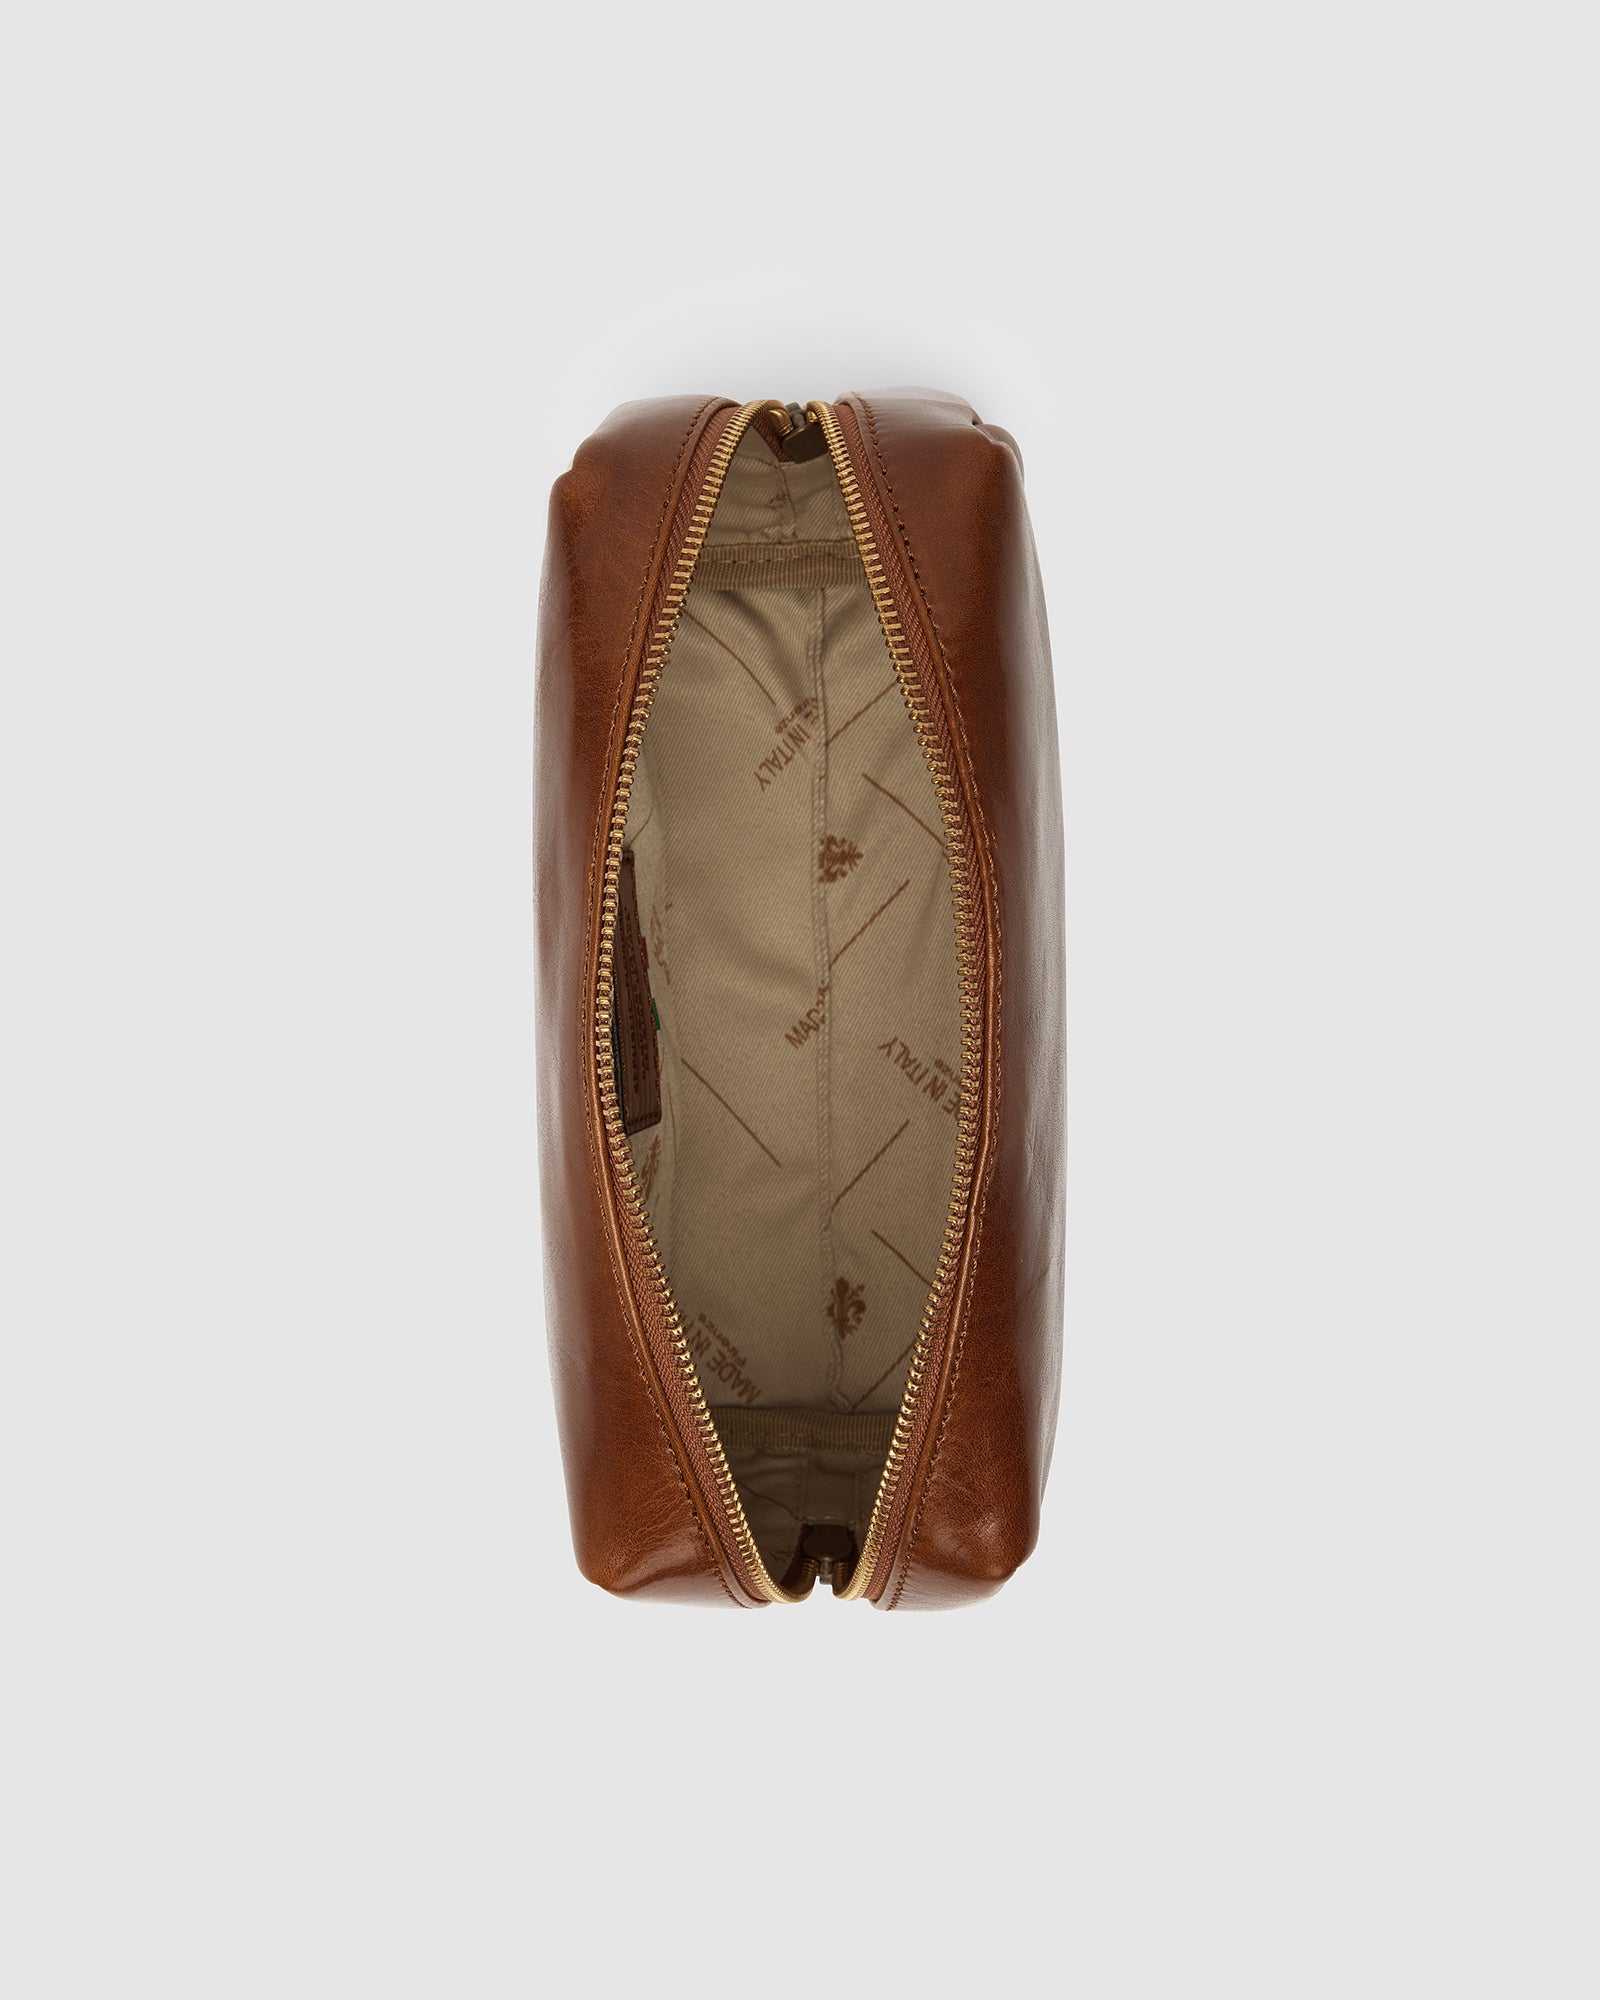 Otto Dopp Kit Tan - Leather Toiletry Bag